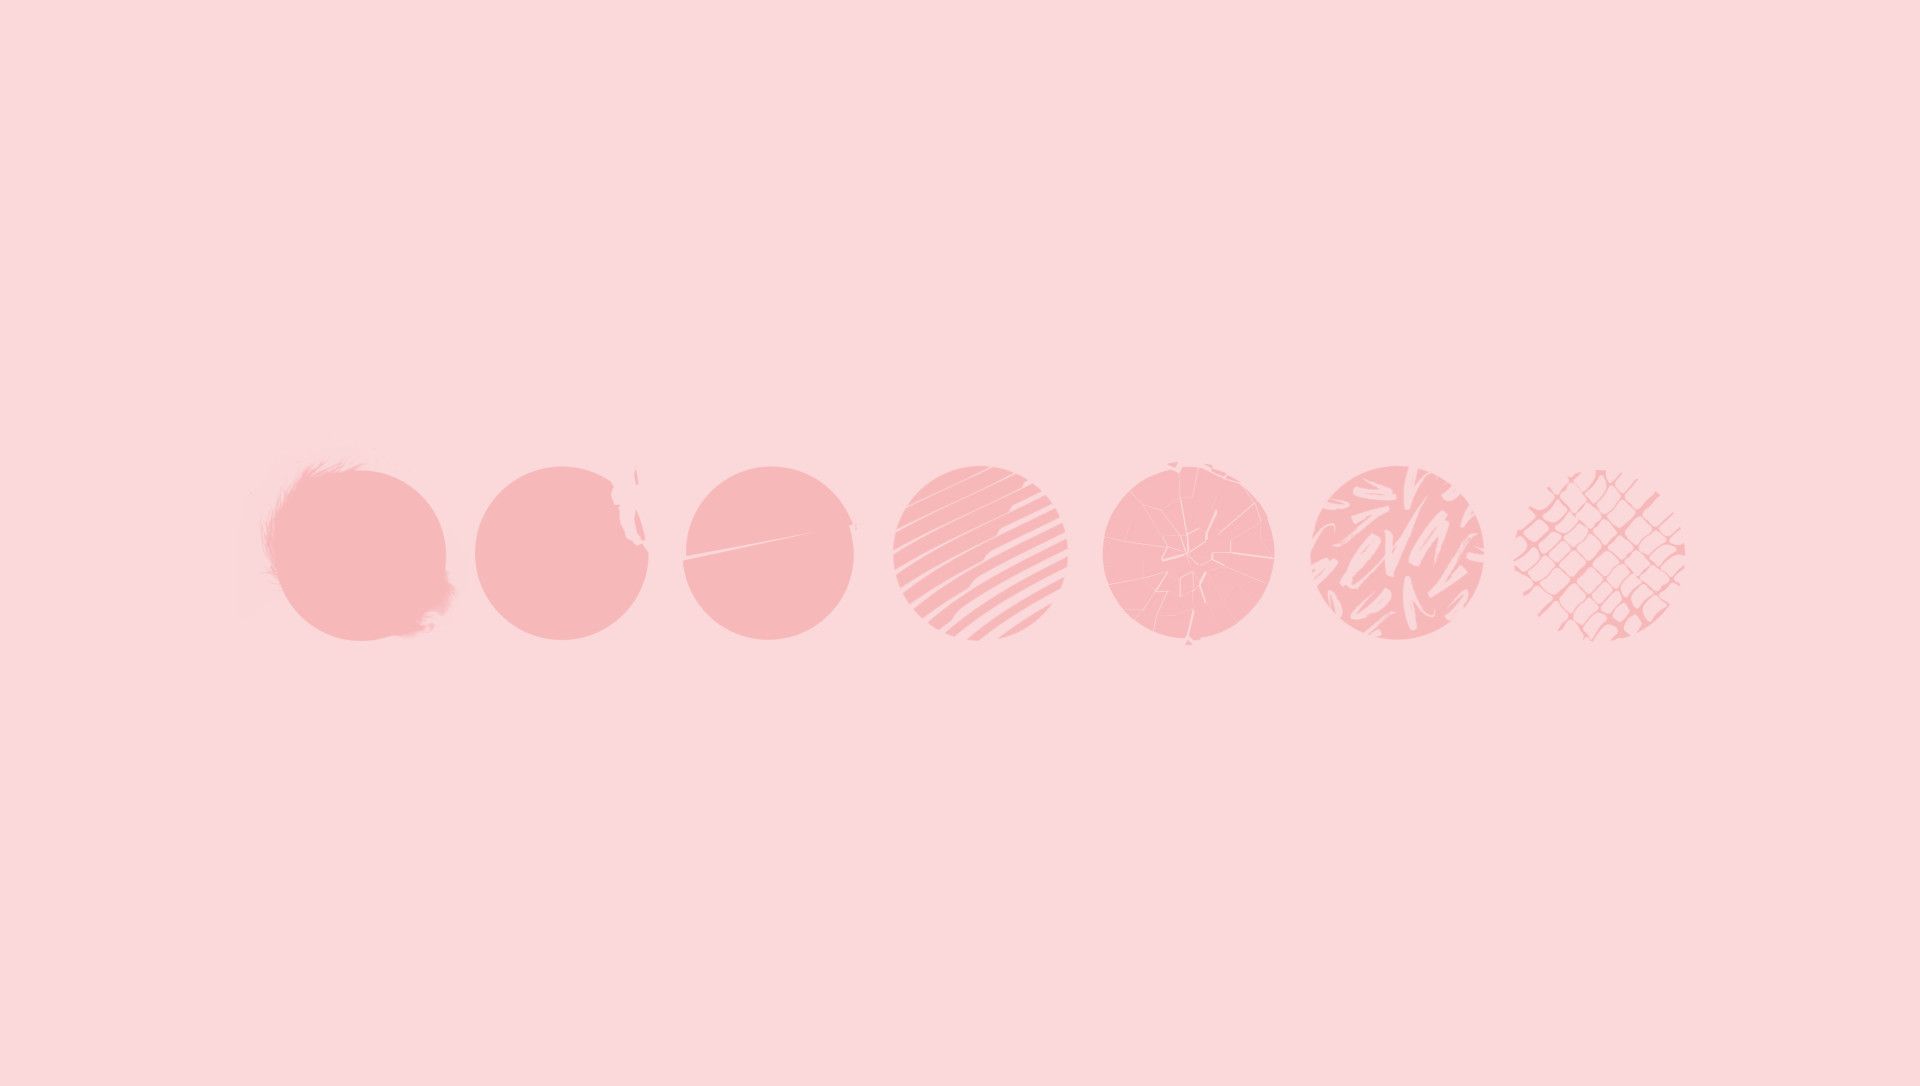 Pink circles on a pink background - Soft pink, pink, pastel pink, Korean